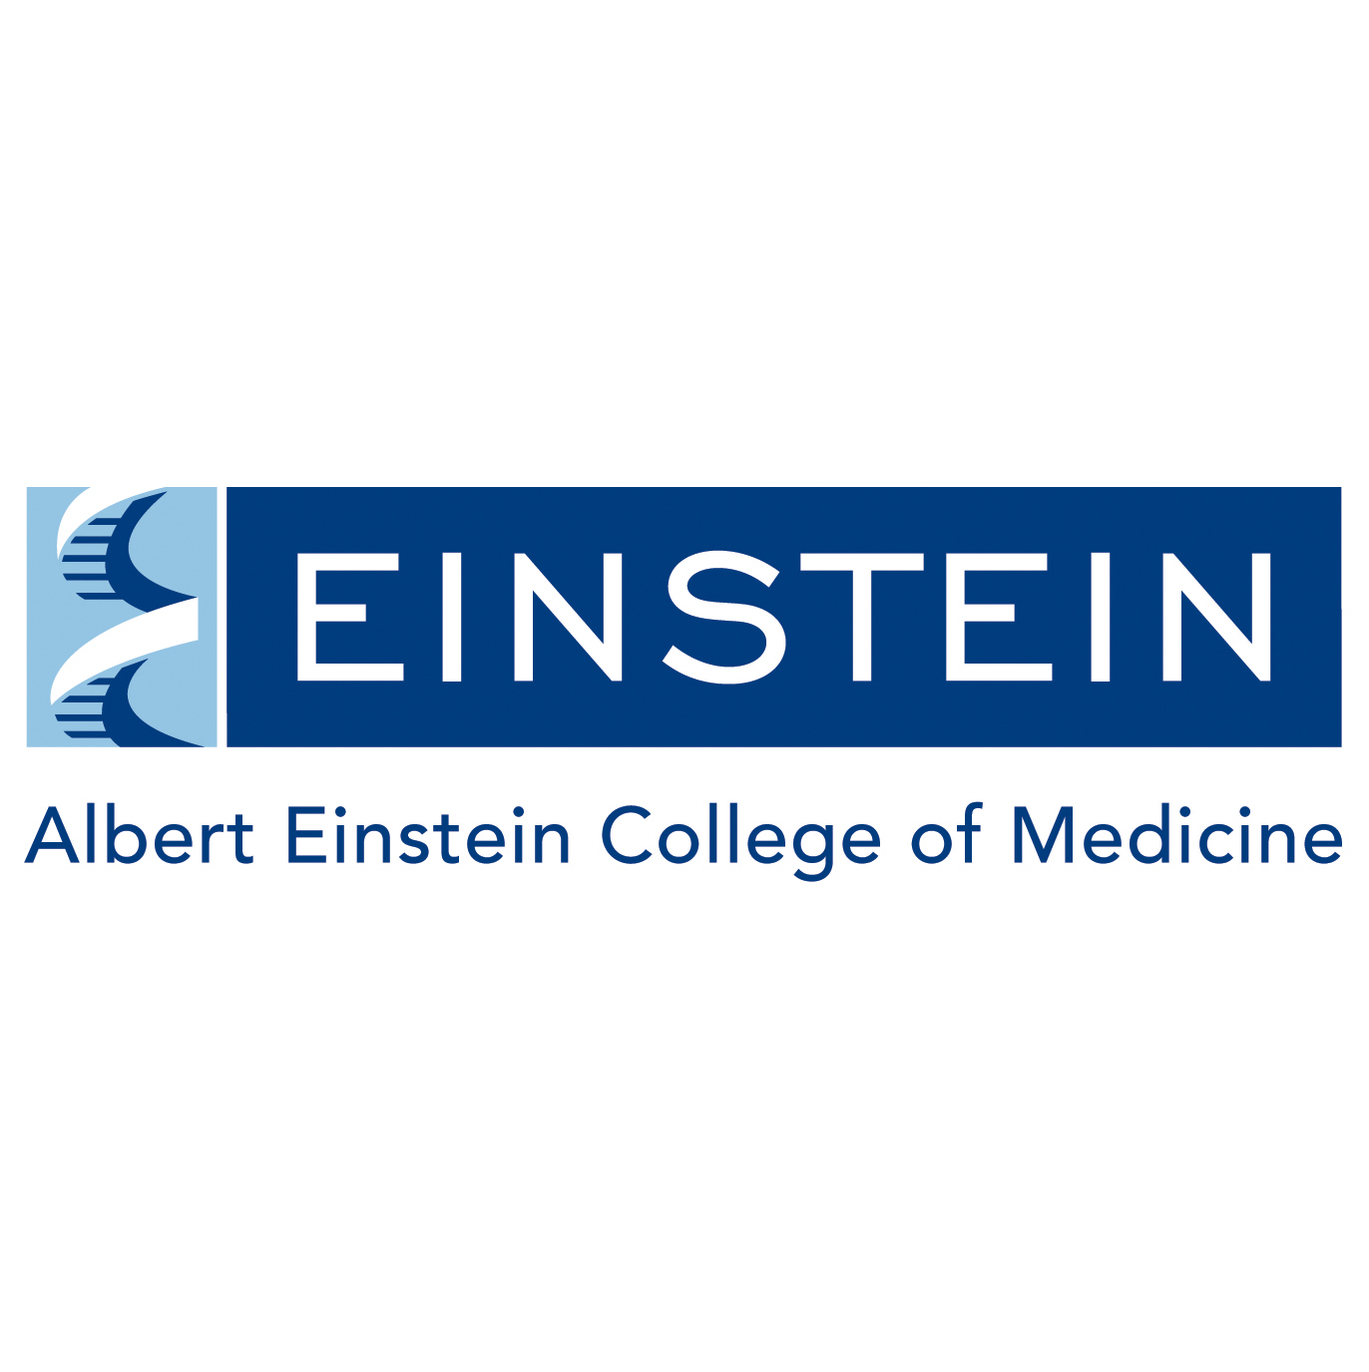 Montefiore Medical Center/Albert Einstein College of Medicine